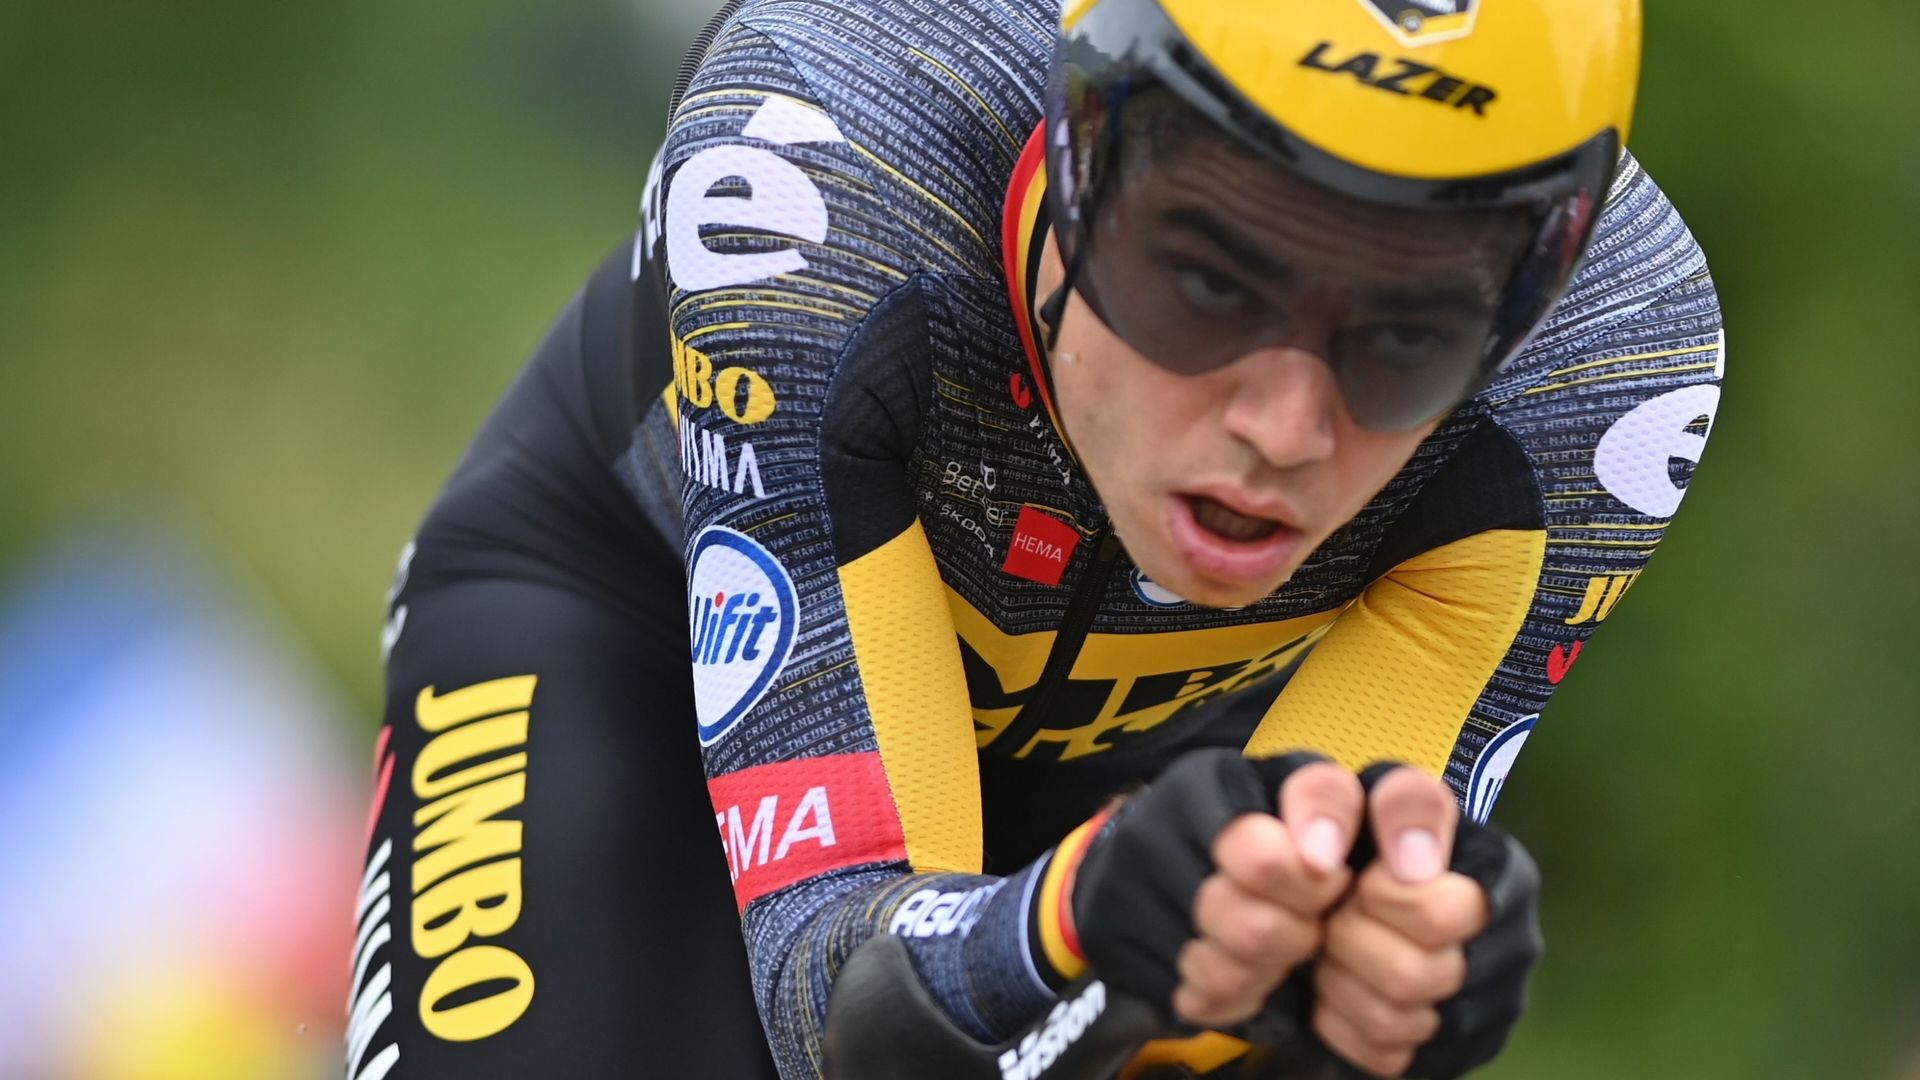 Wout van Aert en action sur le contre-la-montre du Tour de France 2021